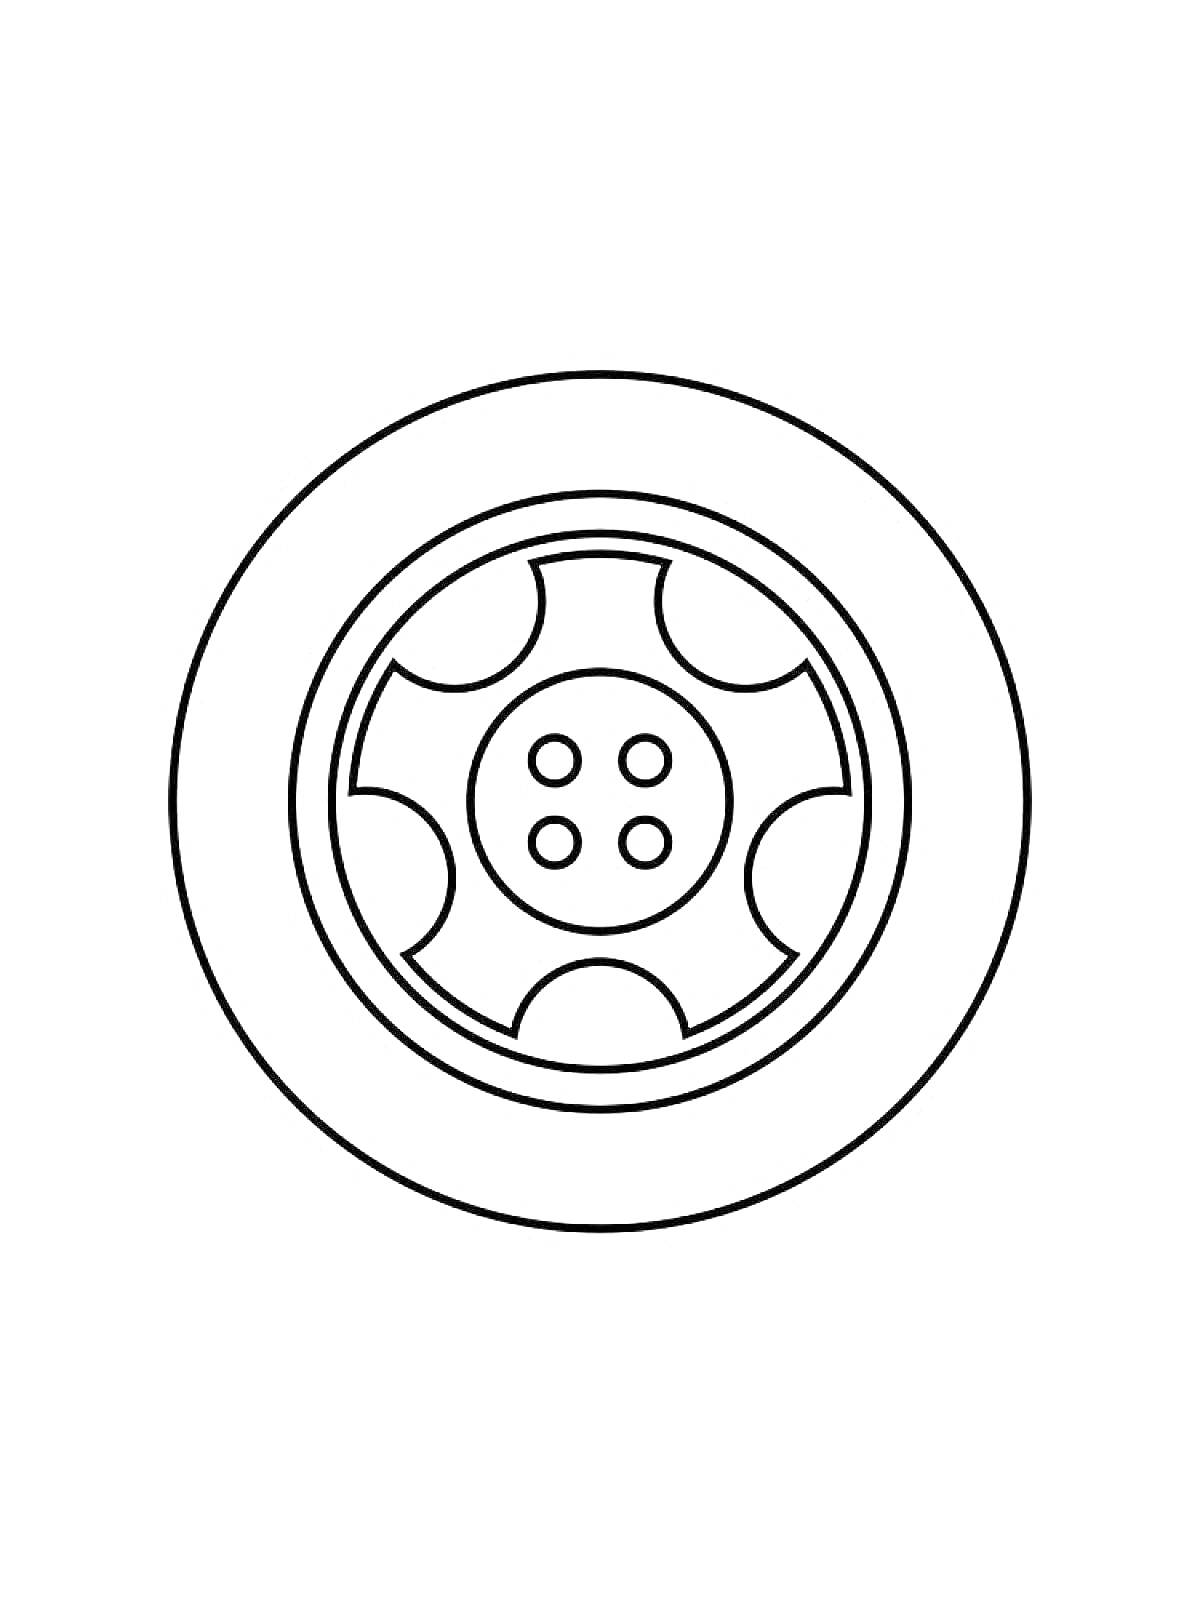  Колесо с шиной и диском (5 спиц и болты)